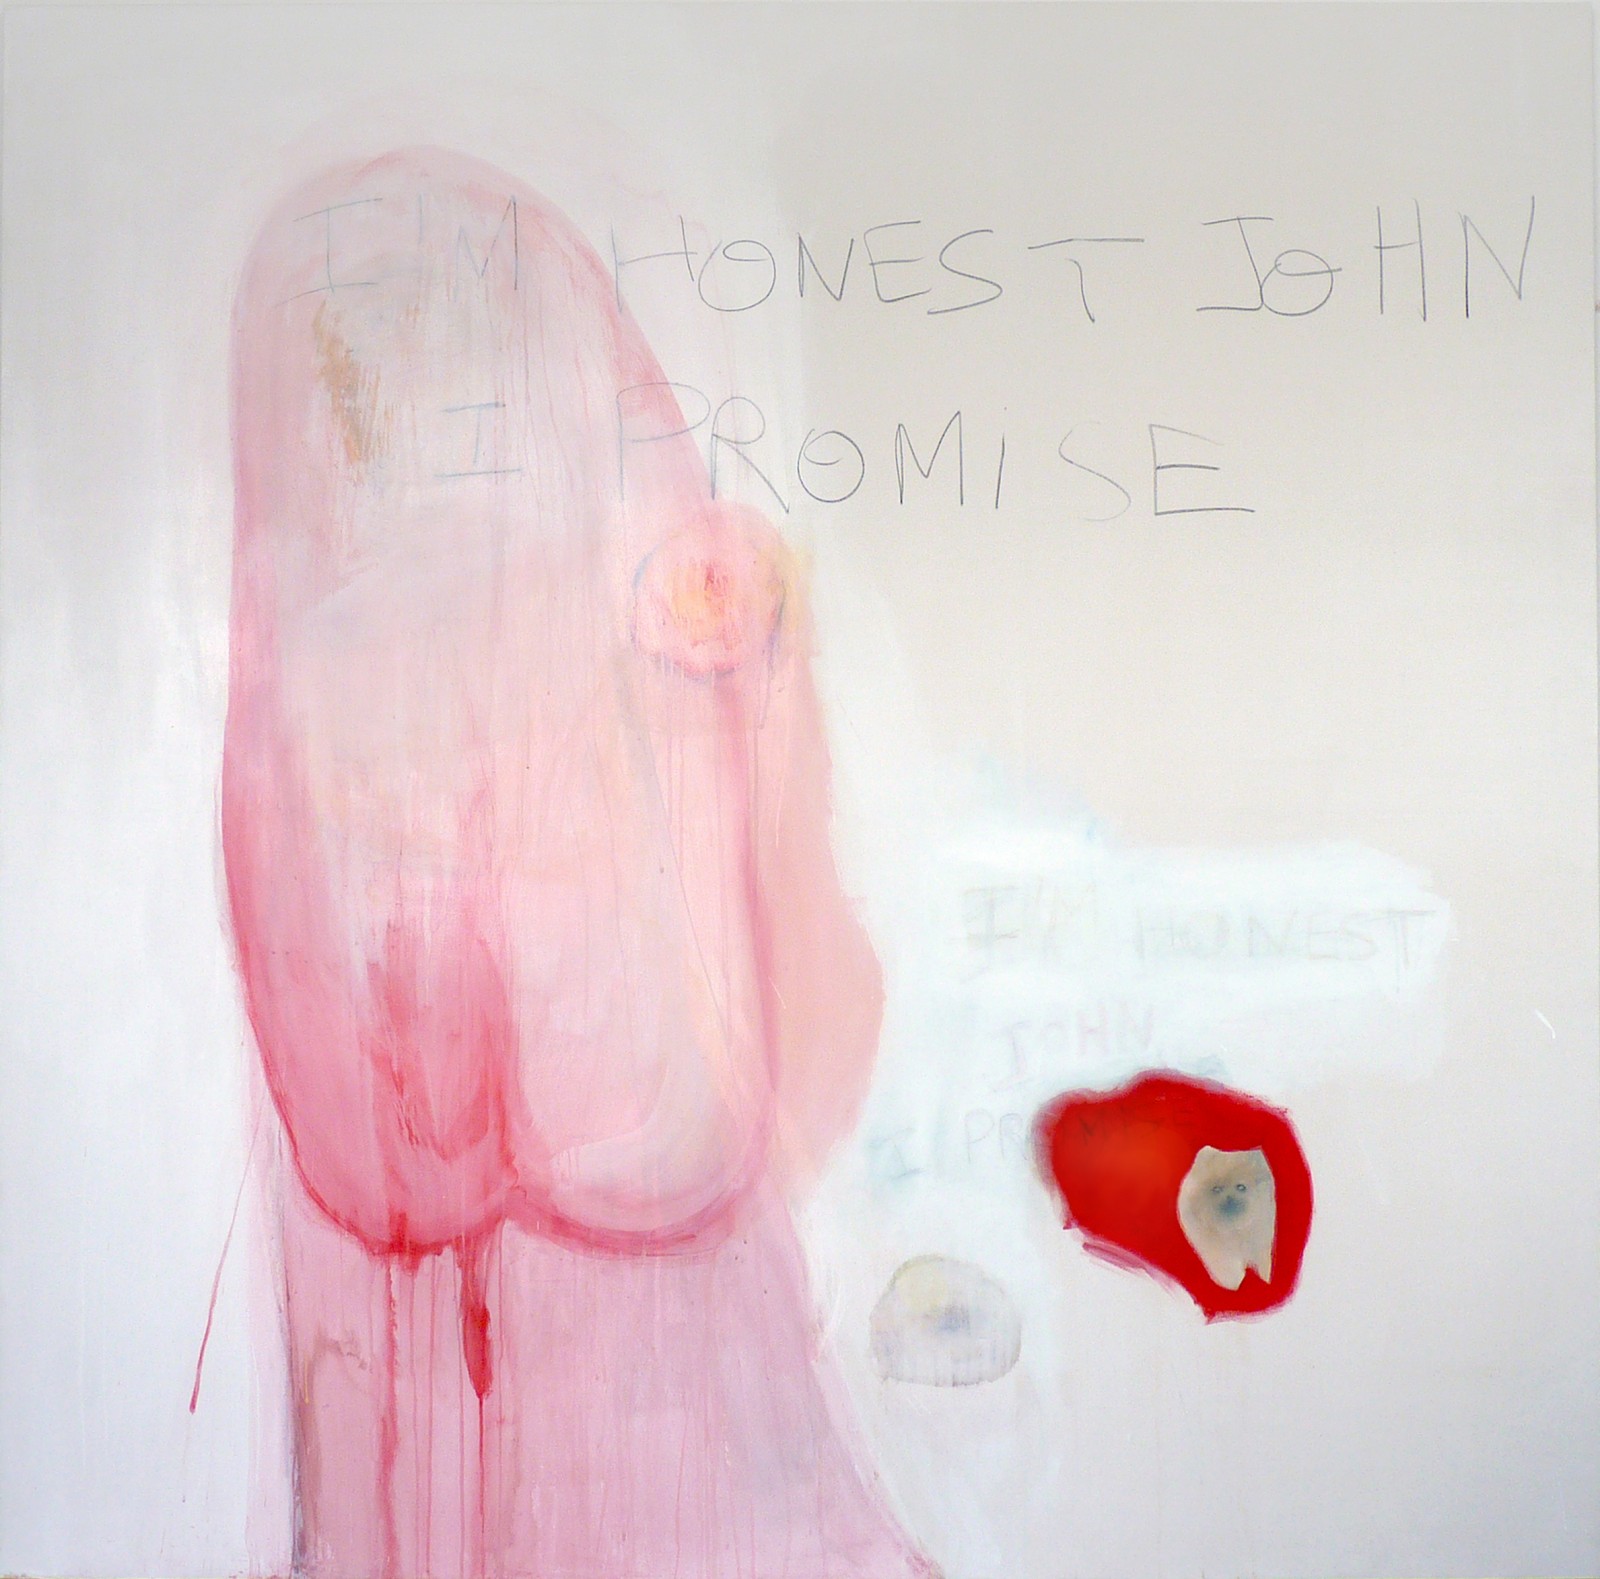 (silence), 190 x 190 cm, 2014